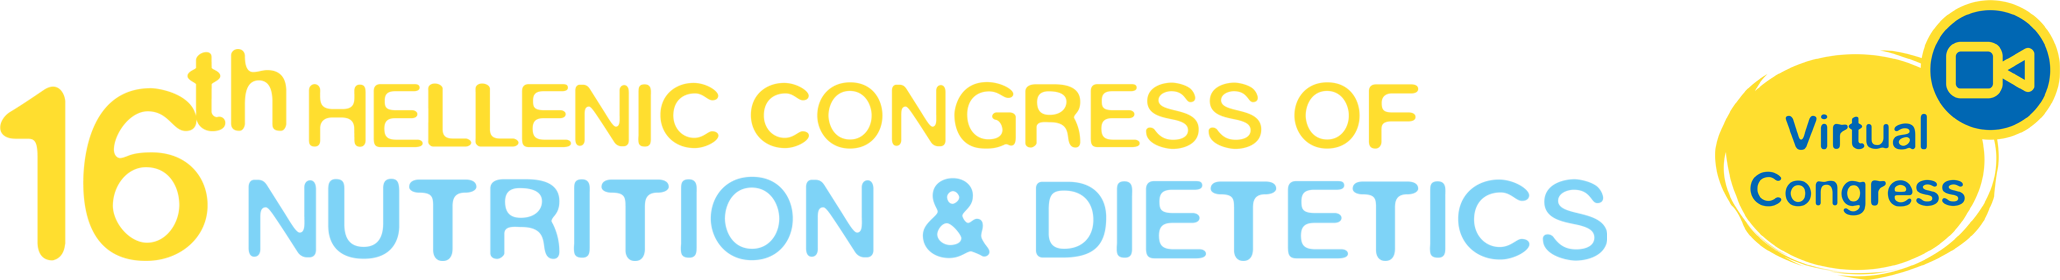 HDA Congress 2021